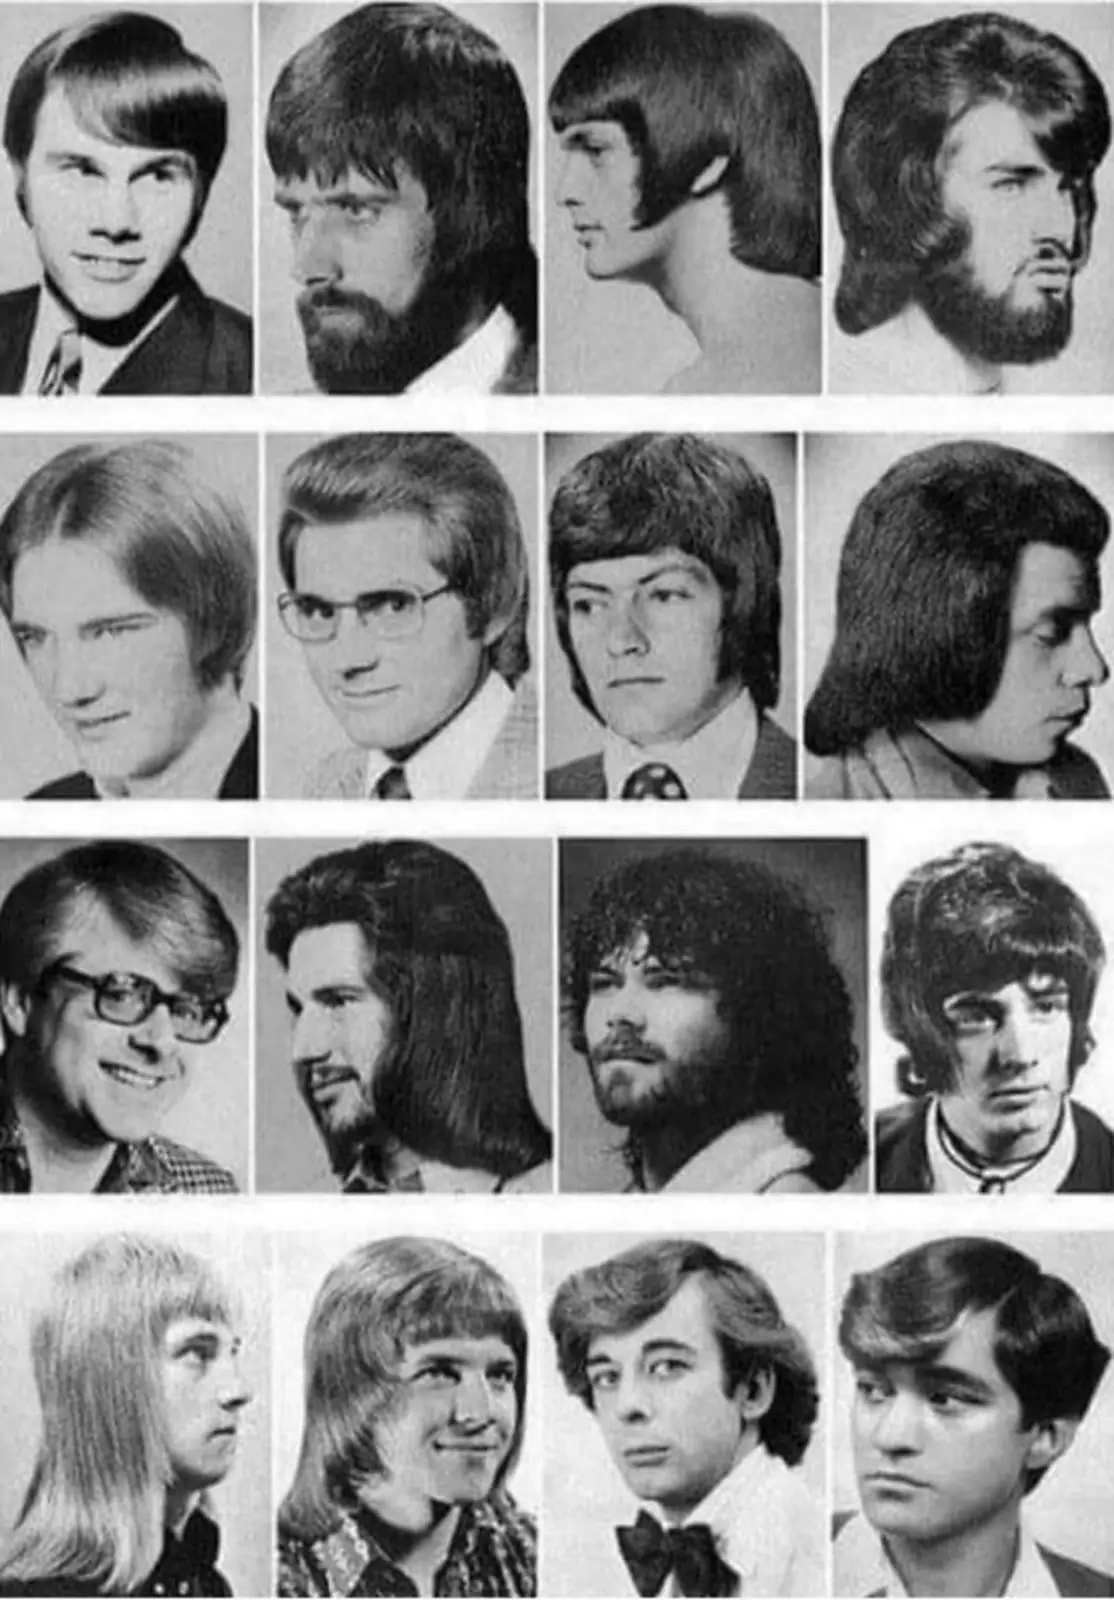 Руководство по стрижке в парикмахерской 1970-х годов.